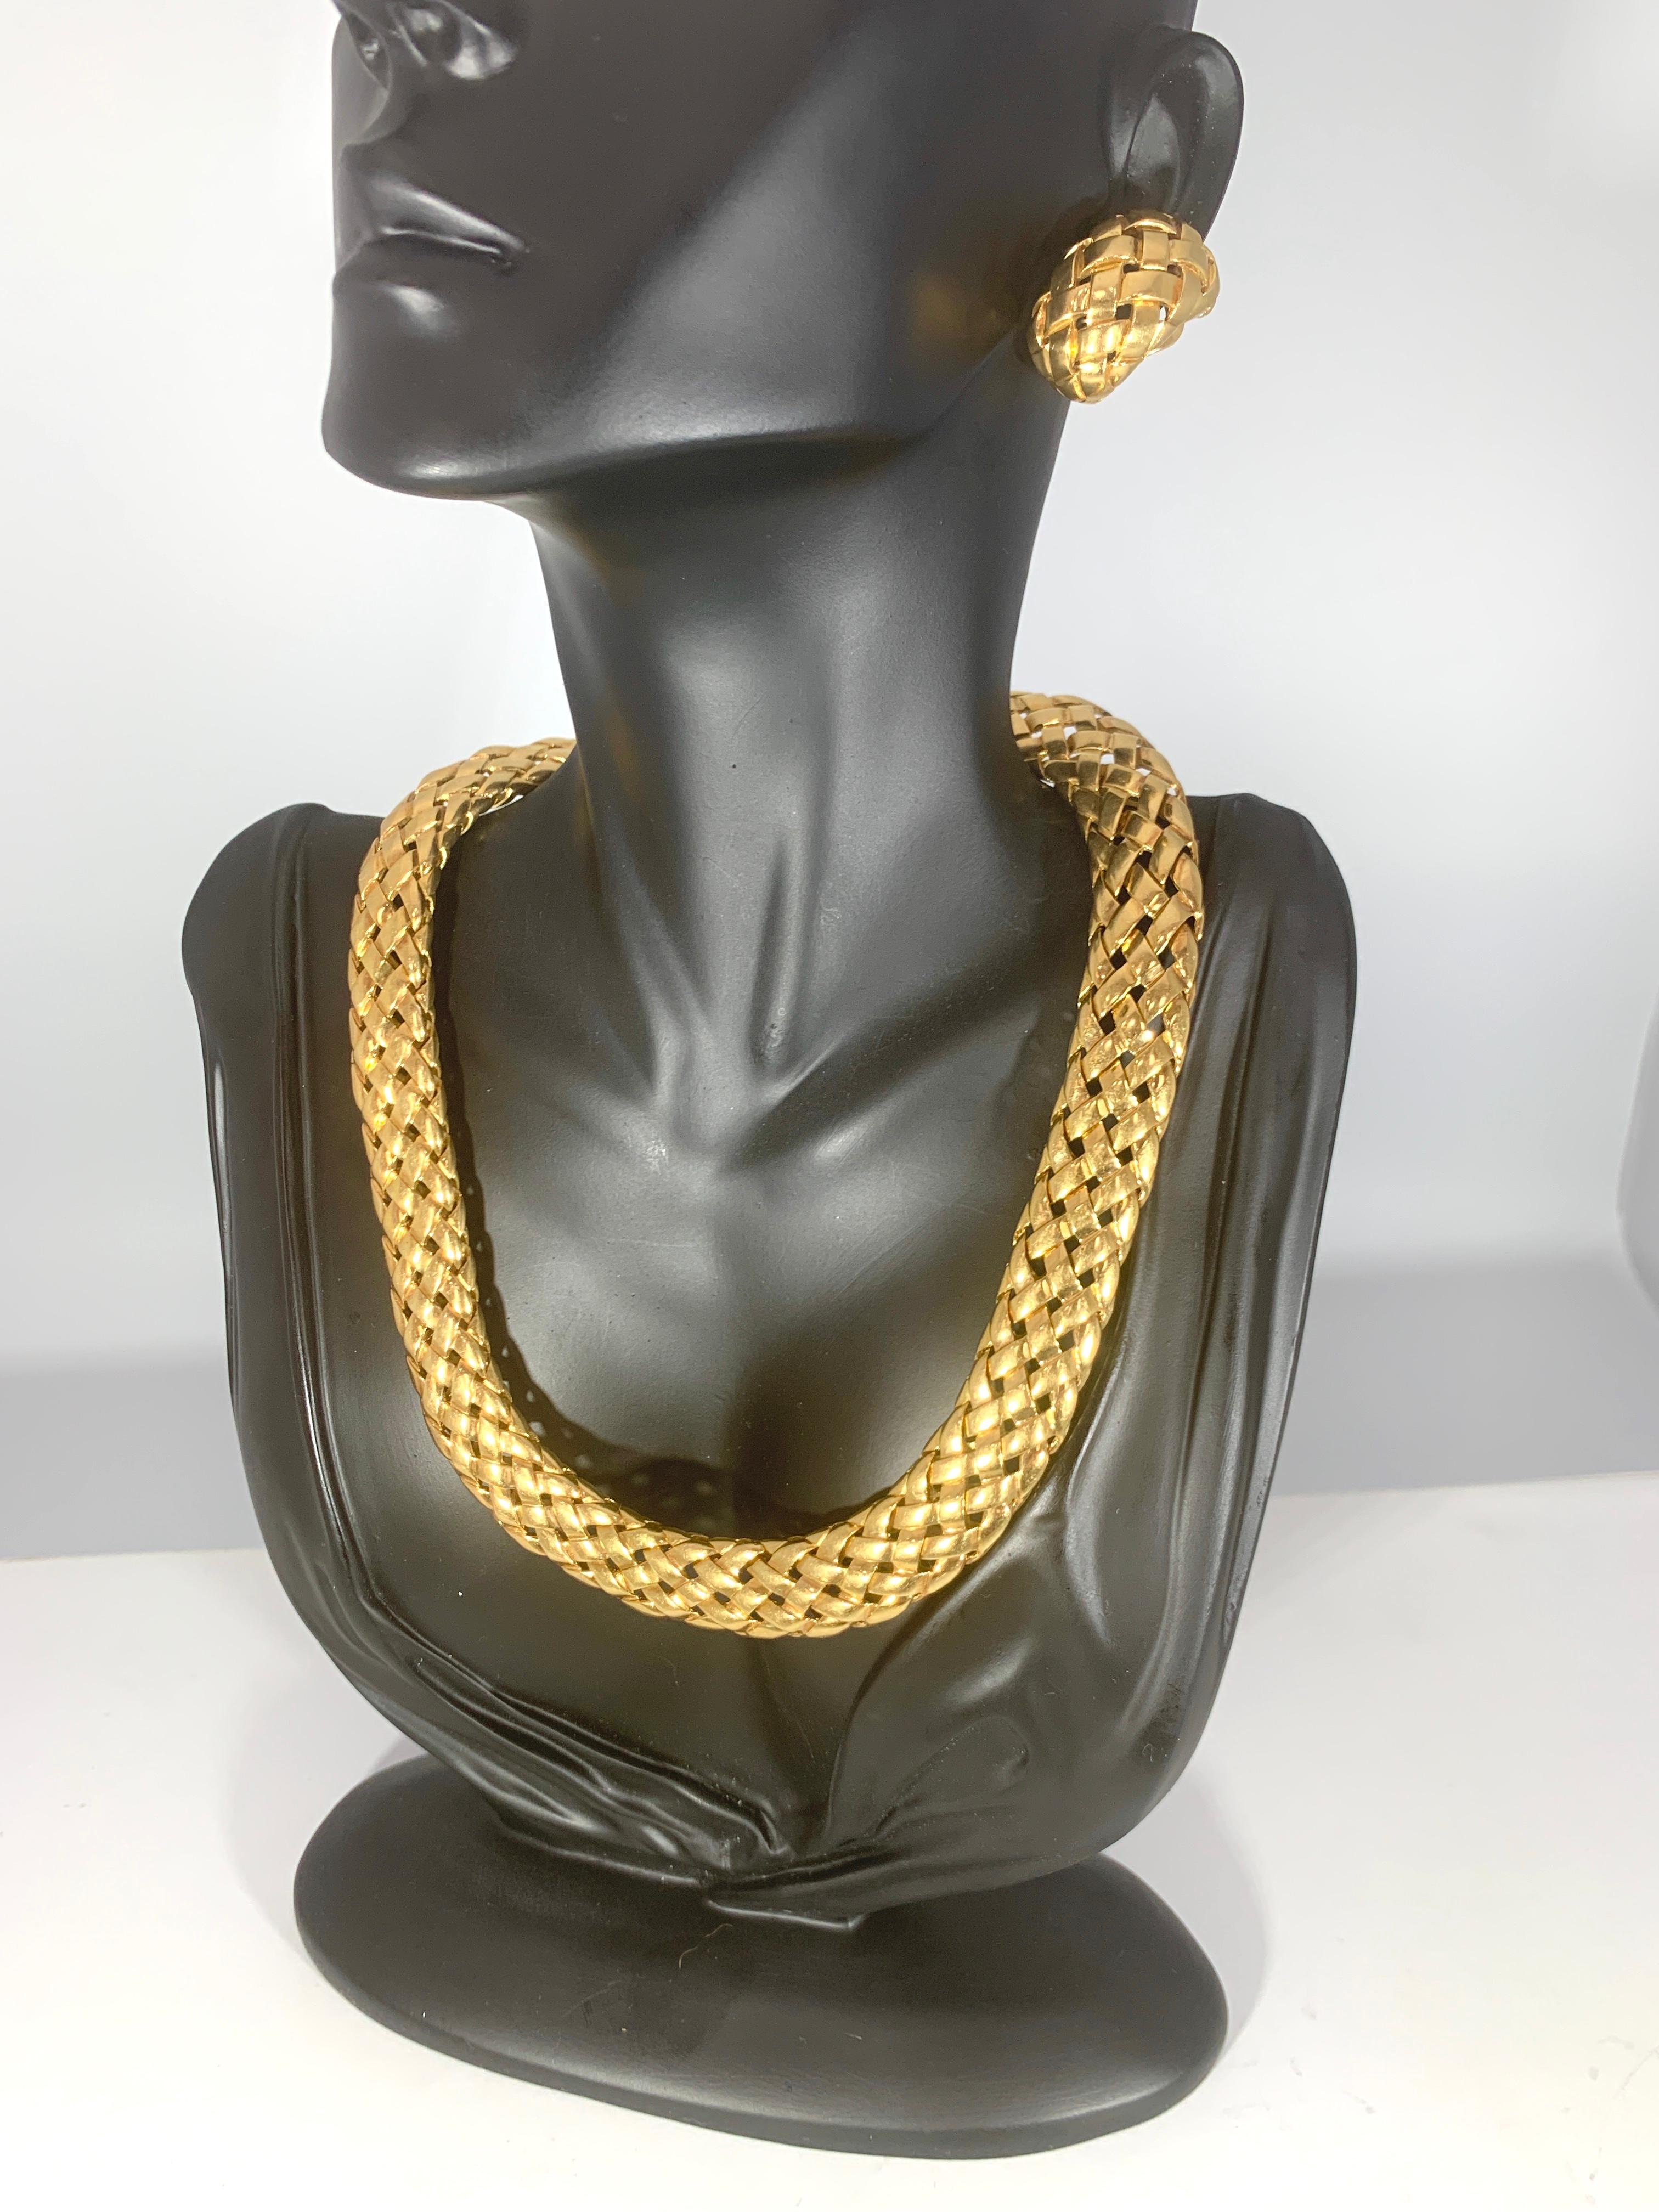 Van Cleef & Arpels Necklace and Earrings Bridal Suite 128 Grams 18k Gold, Estate 10